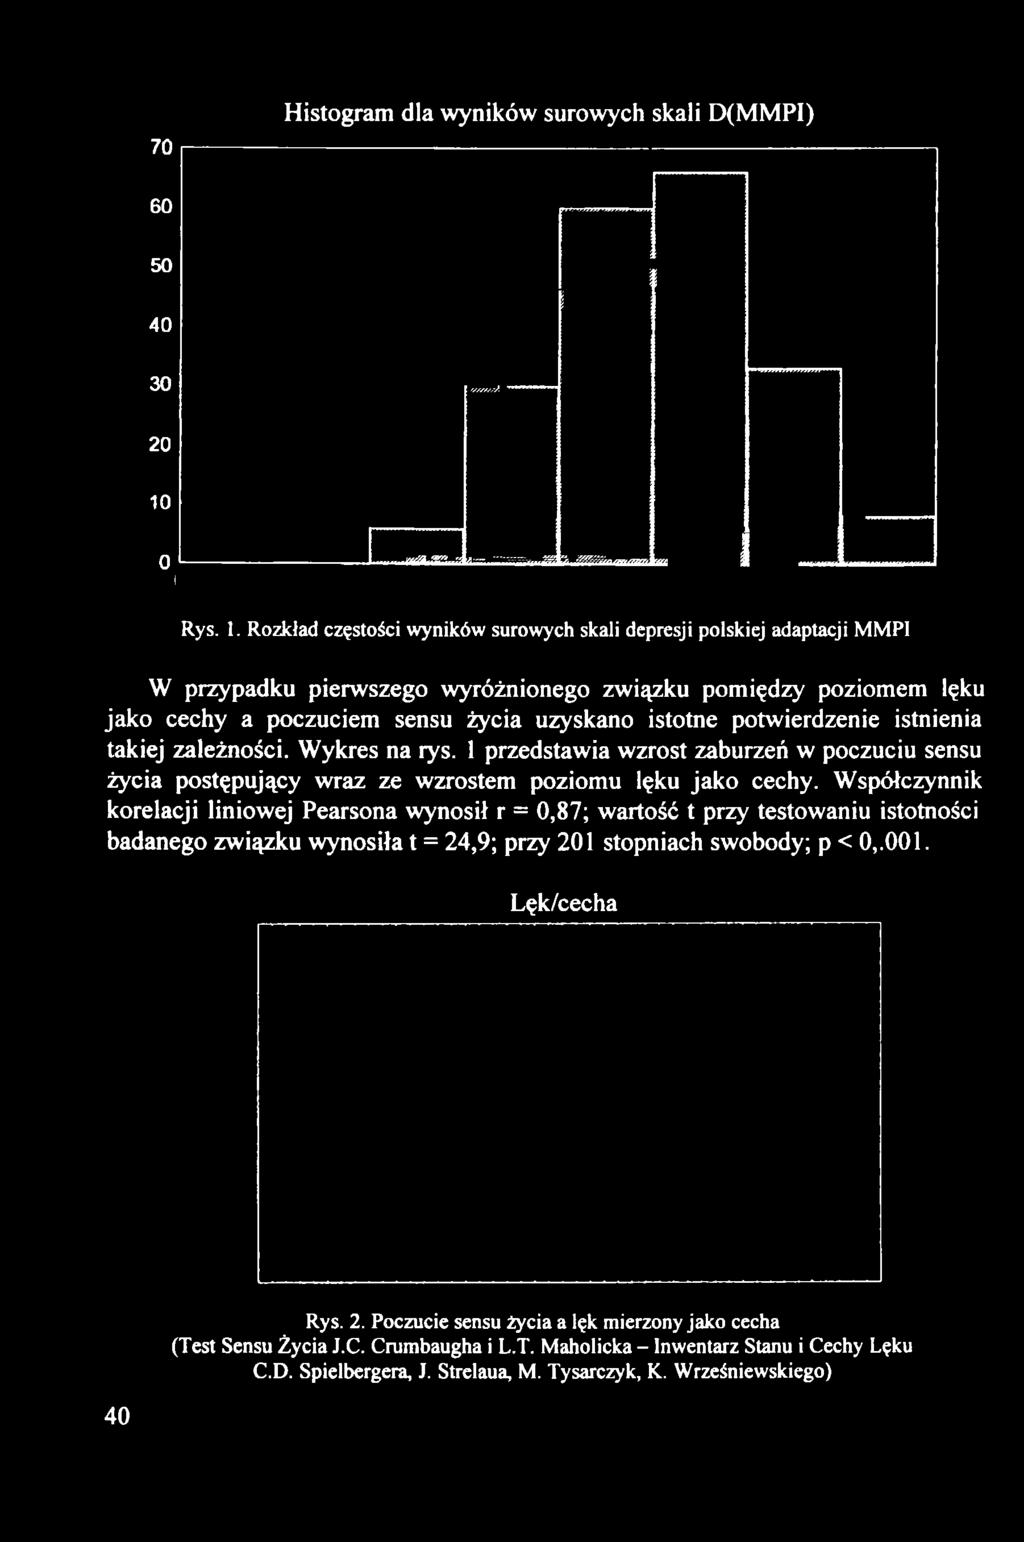 Rozkład częstości wyników surowych skali depresji polskiej adaptacji MMPI W przypadku pierwszego wyróżnionego związku pomiędzy poziomem lęku jako cechy a poczuciem sensu życia uzyskano istotne